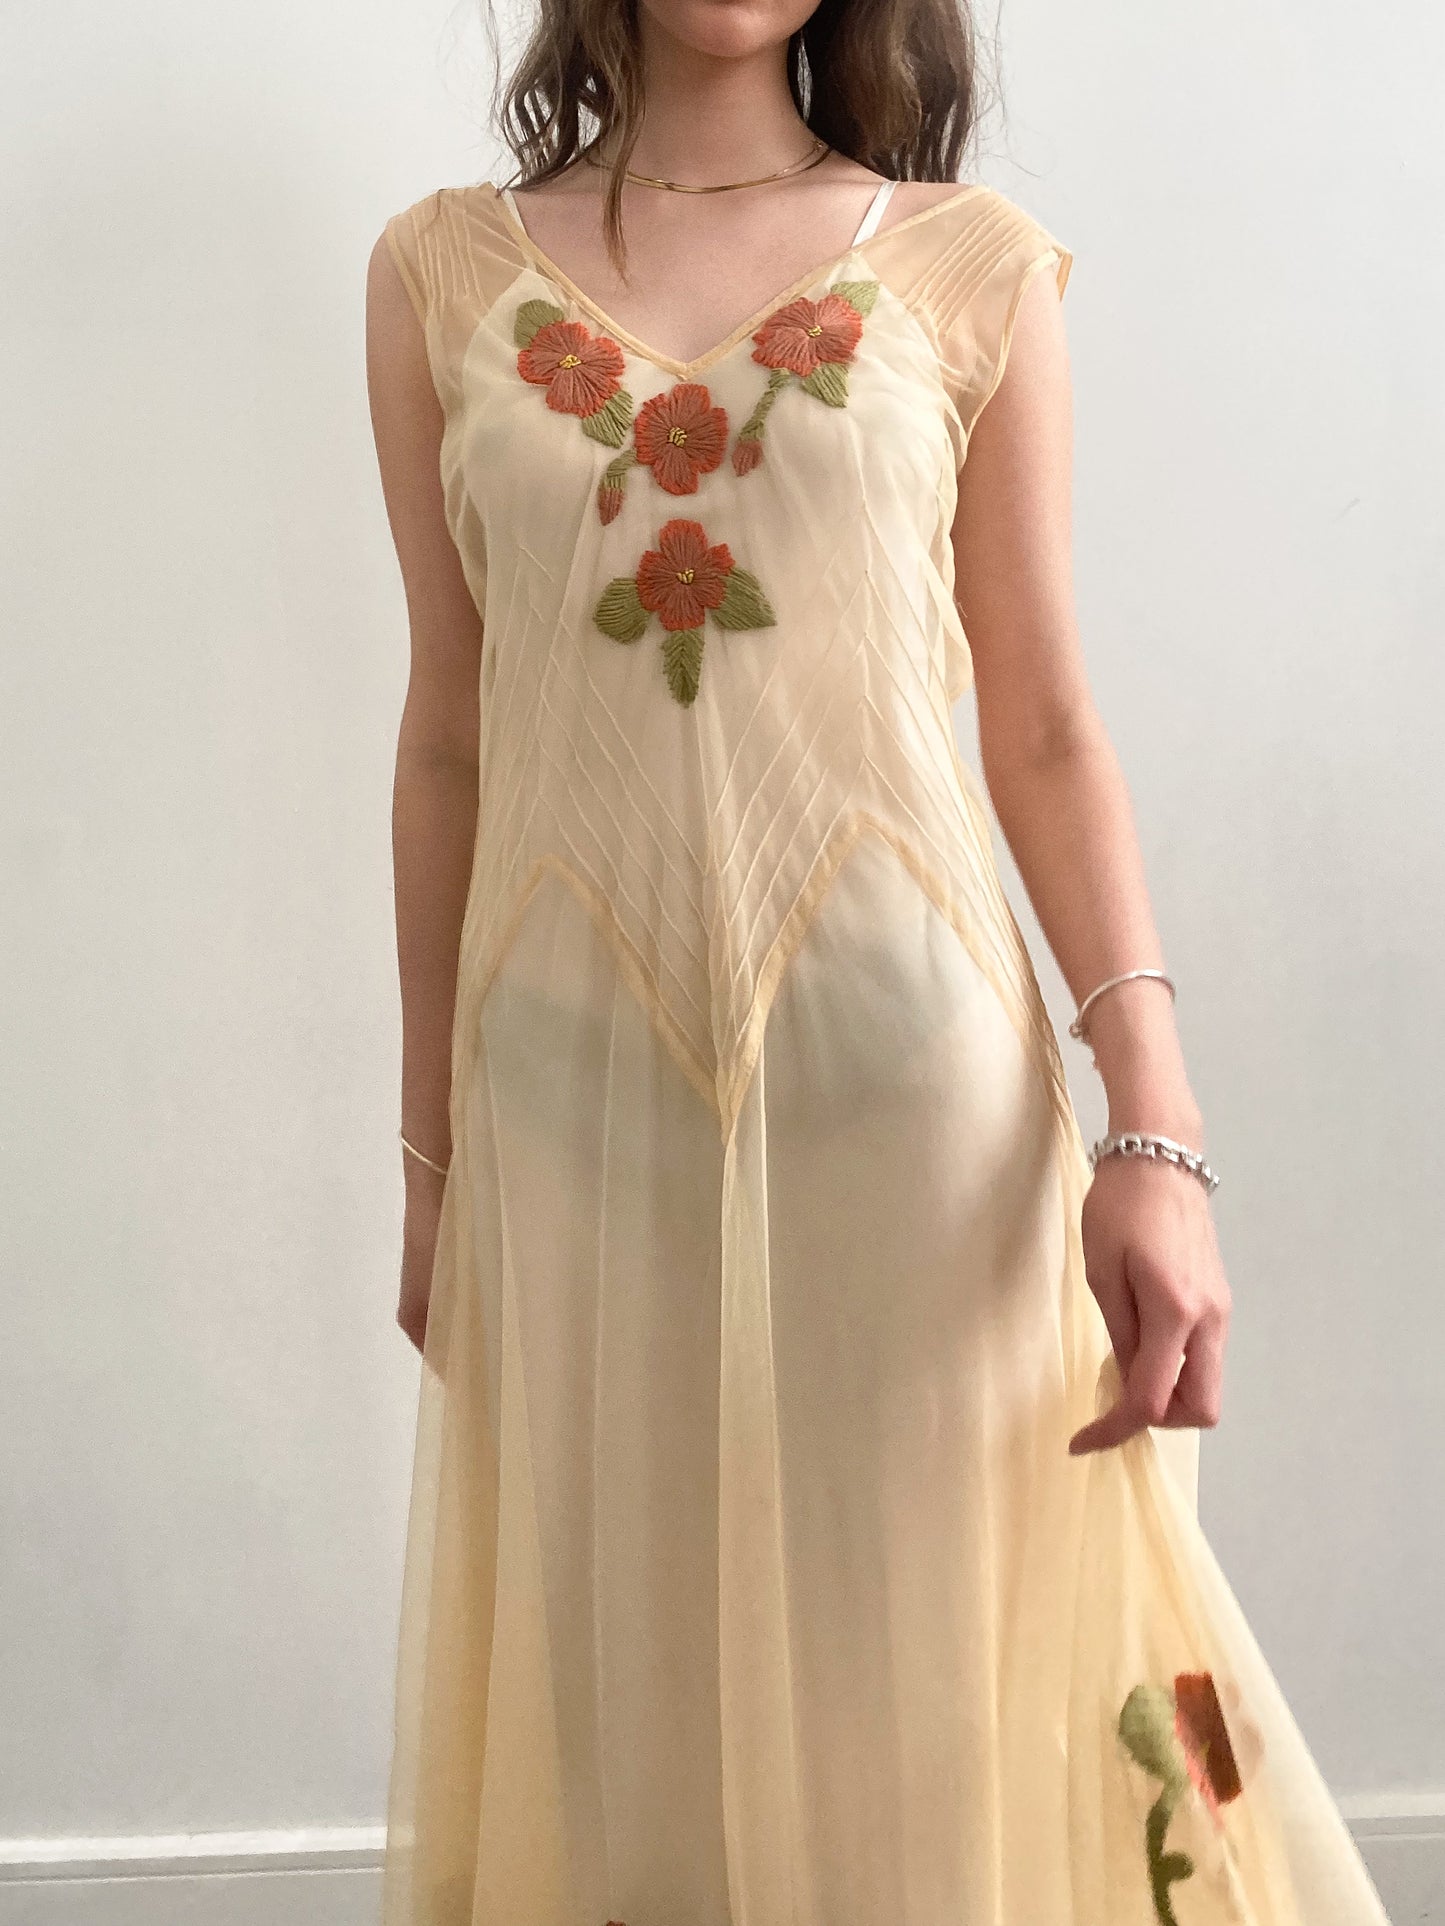 Vintage floral 30s summer dress